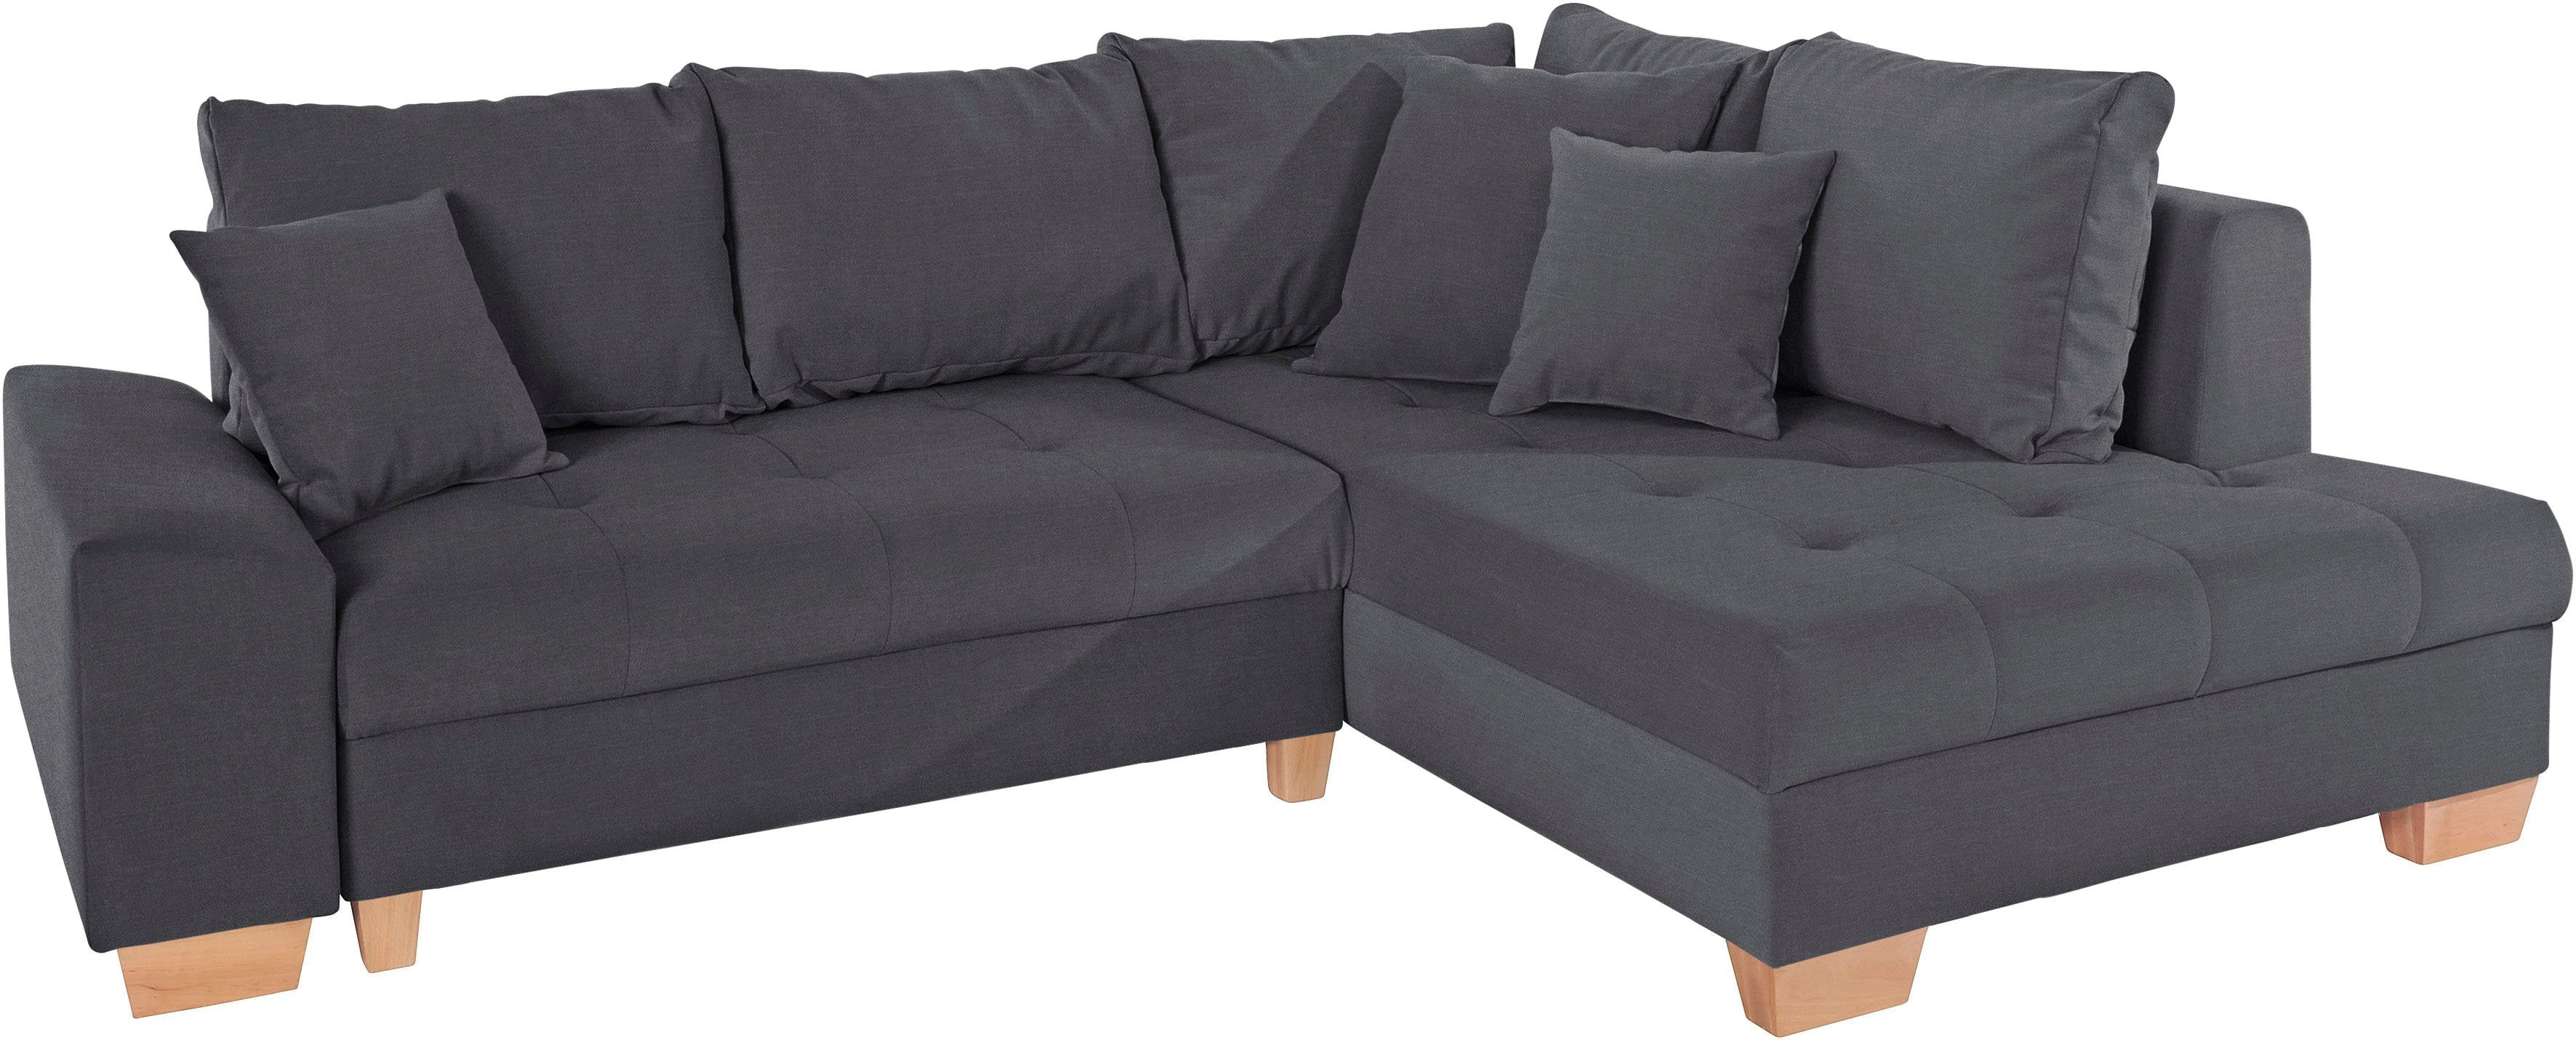 mr. couch hoekbank nikita l-vorm naar keuze met koudschuim (140 kg belasting-zitting), aquaclean-stof grijs